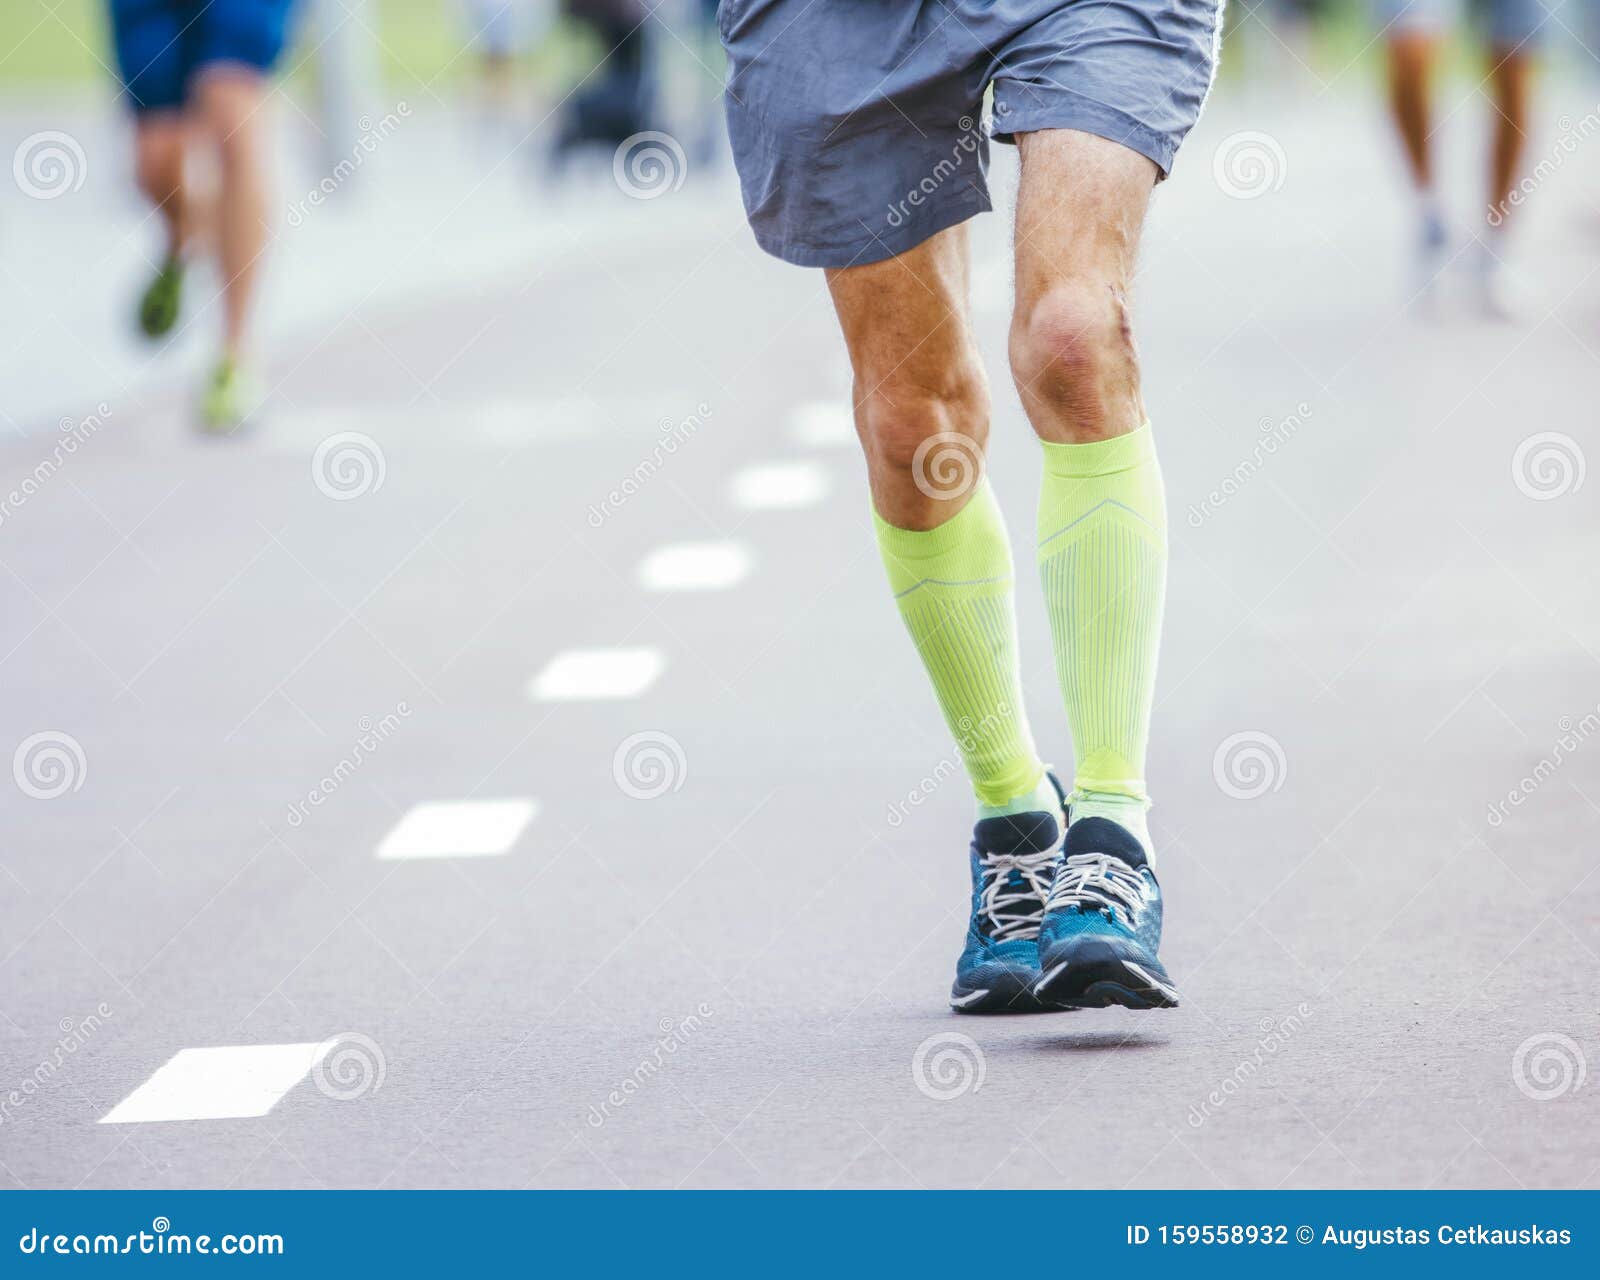 Old Man Runner Running on Street Stock Photo - Image of elderly ...